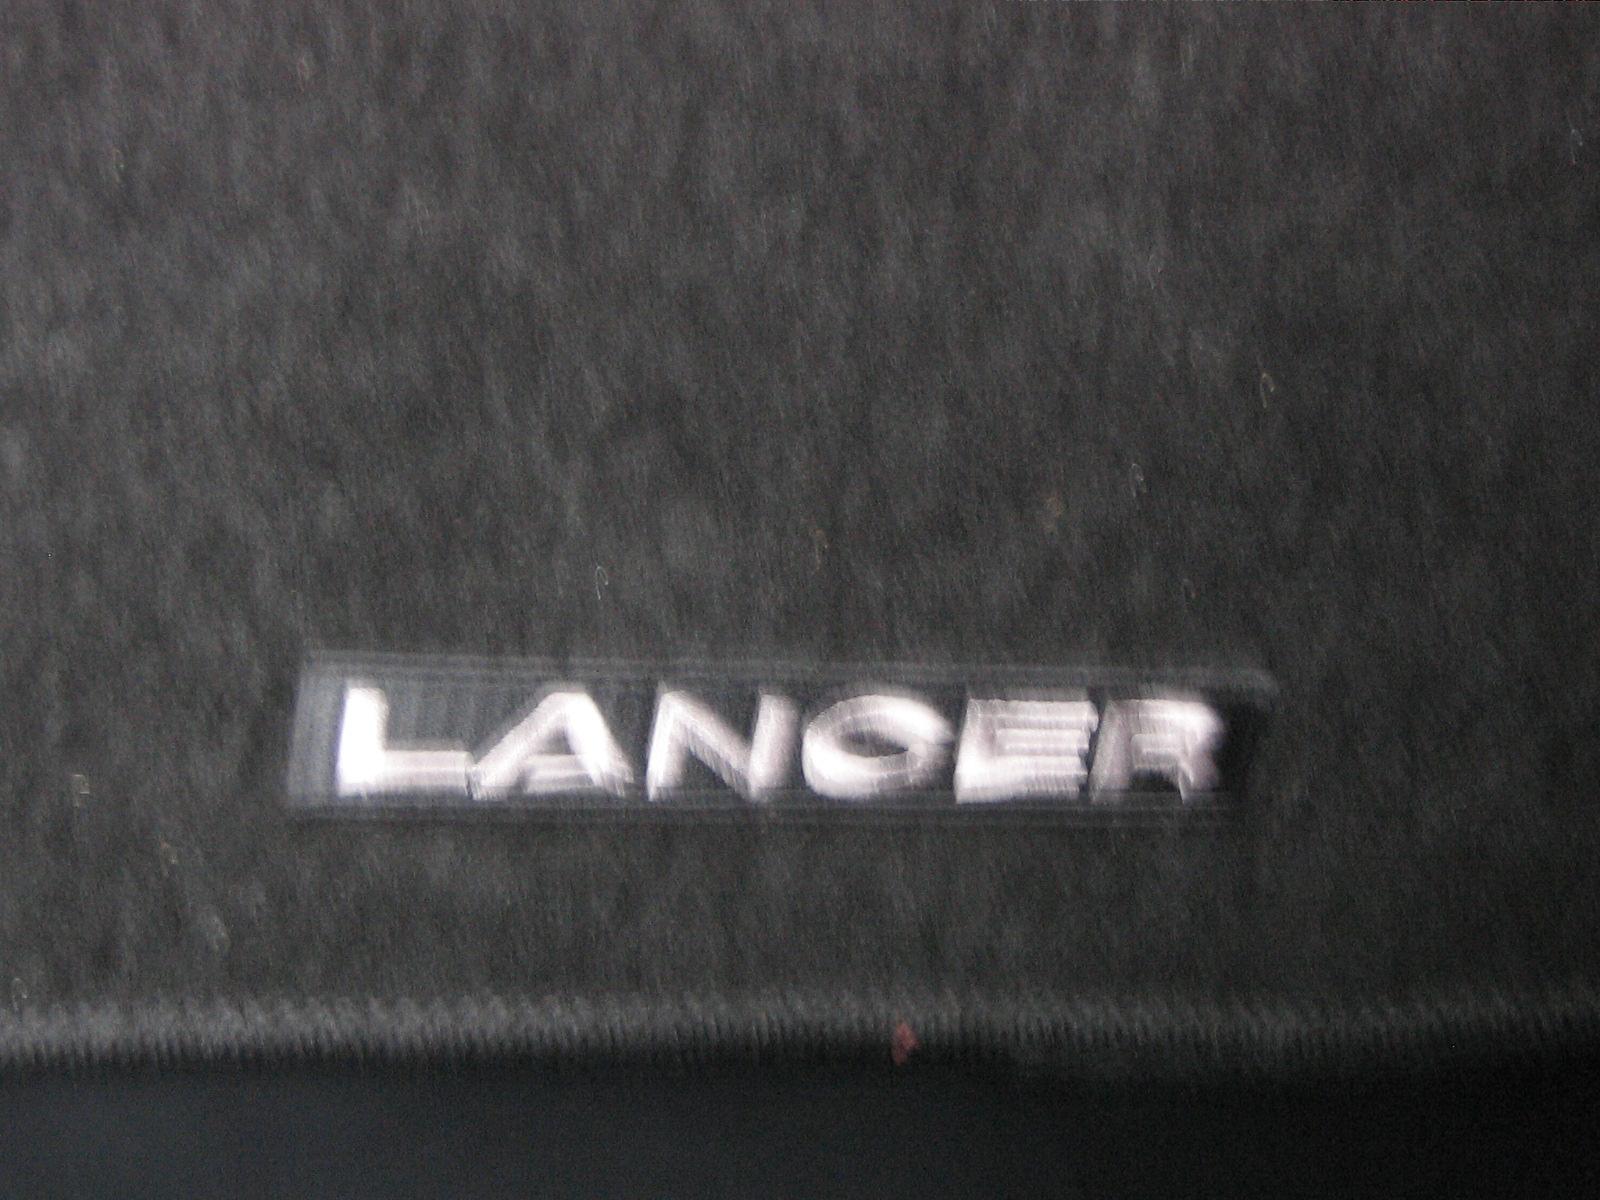 My 2009 Mitsubishi Lancer